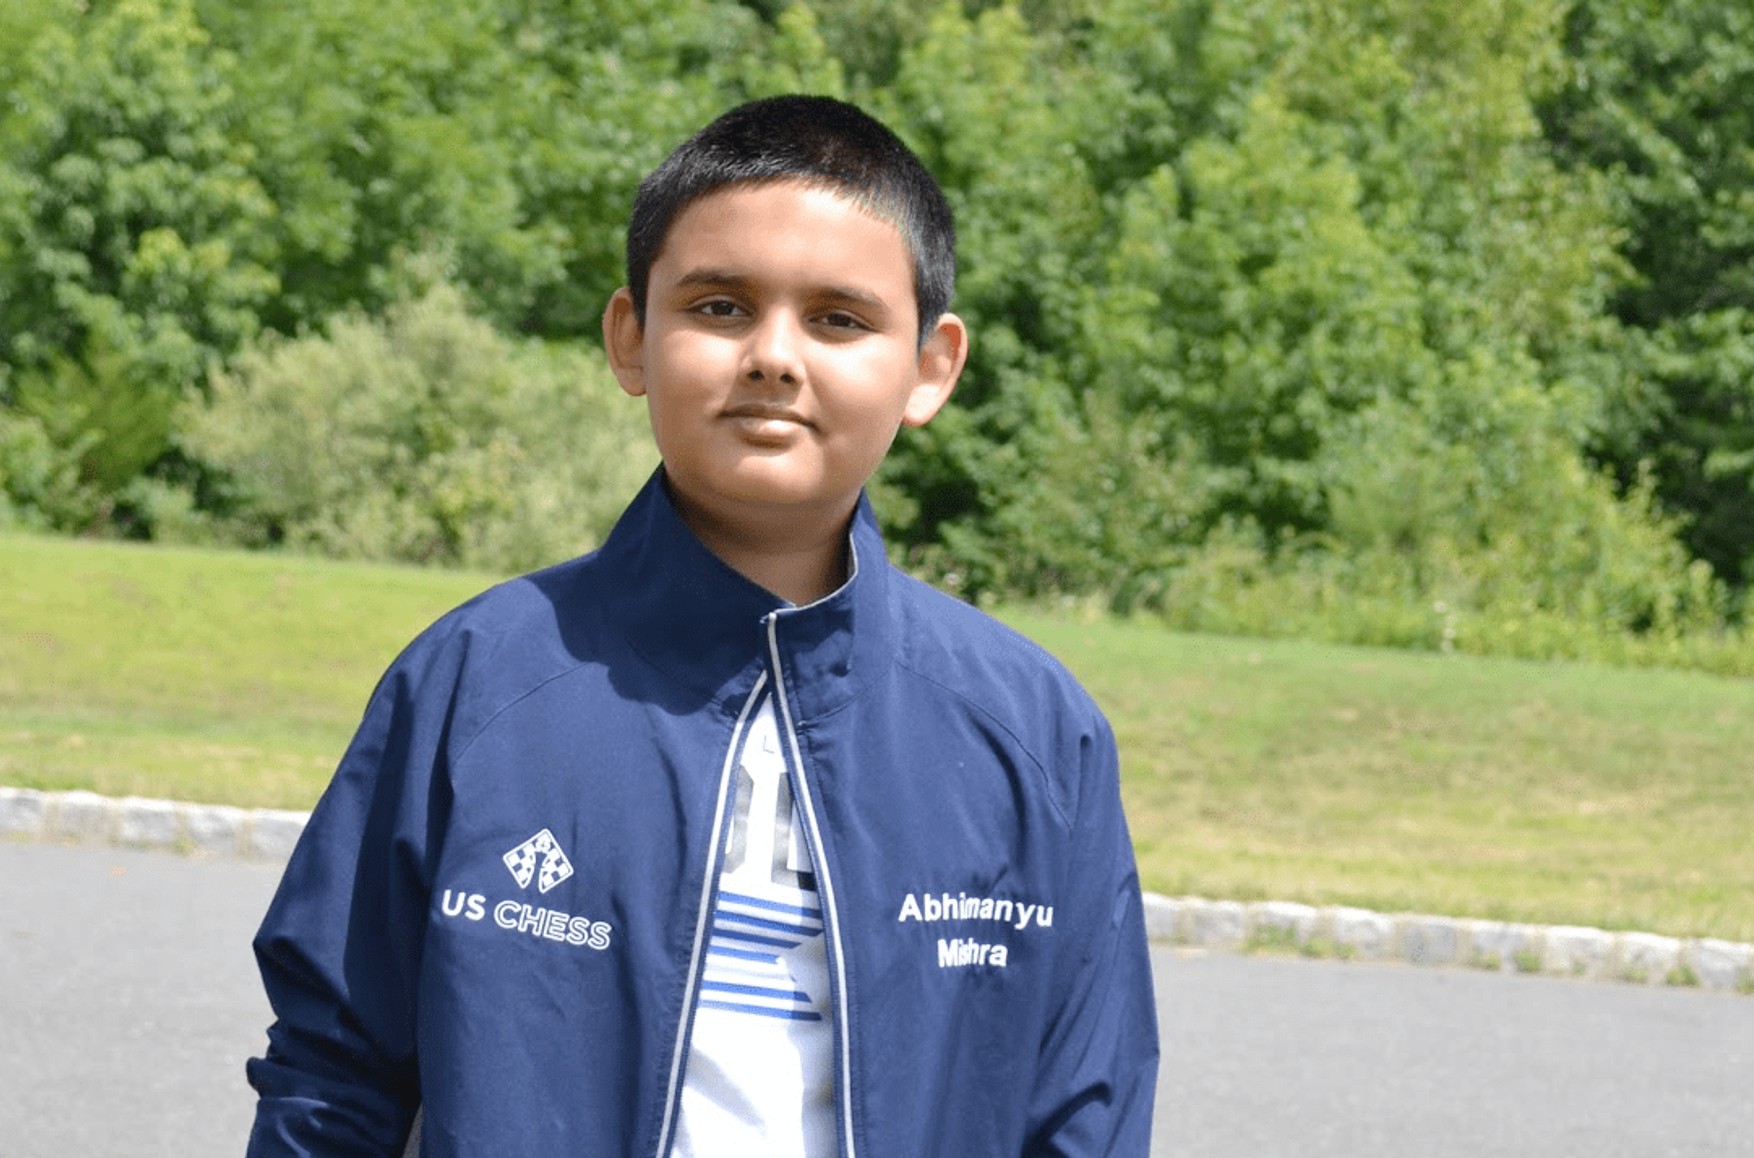 12-річний американець Абхіманью Мішра став наймолодшим гросмейстером в історії